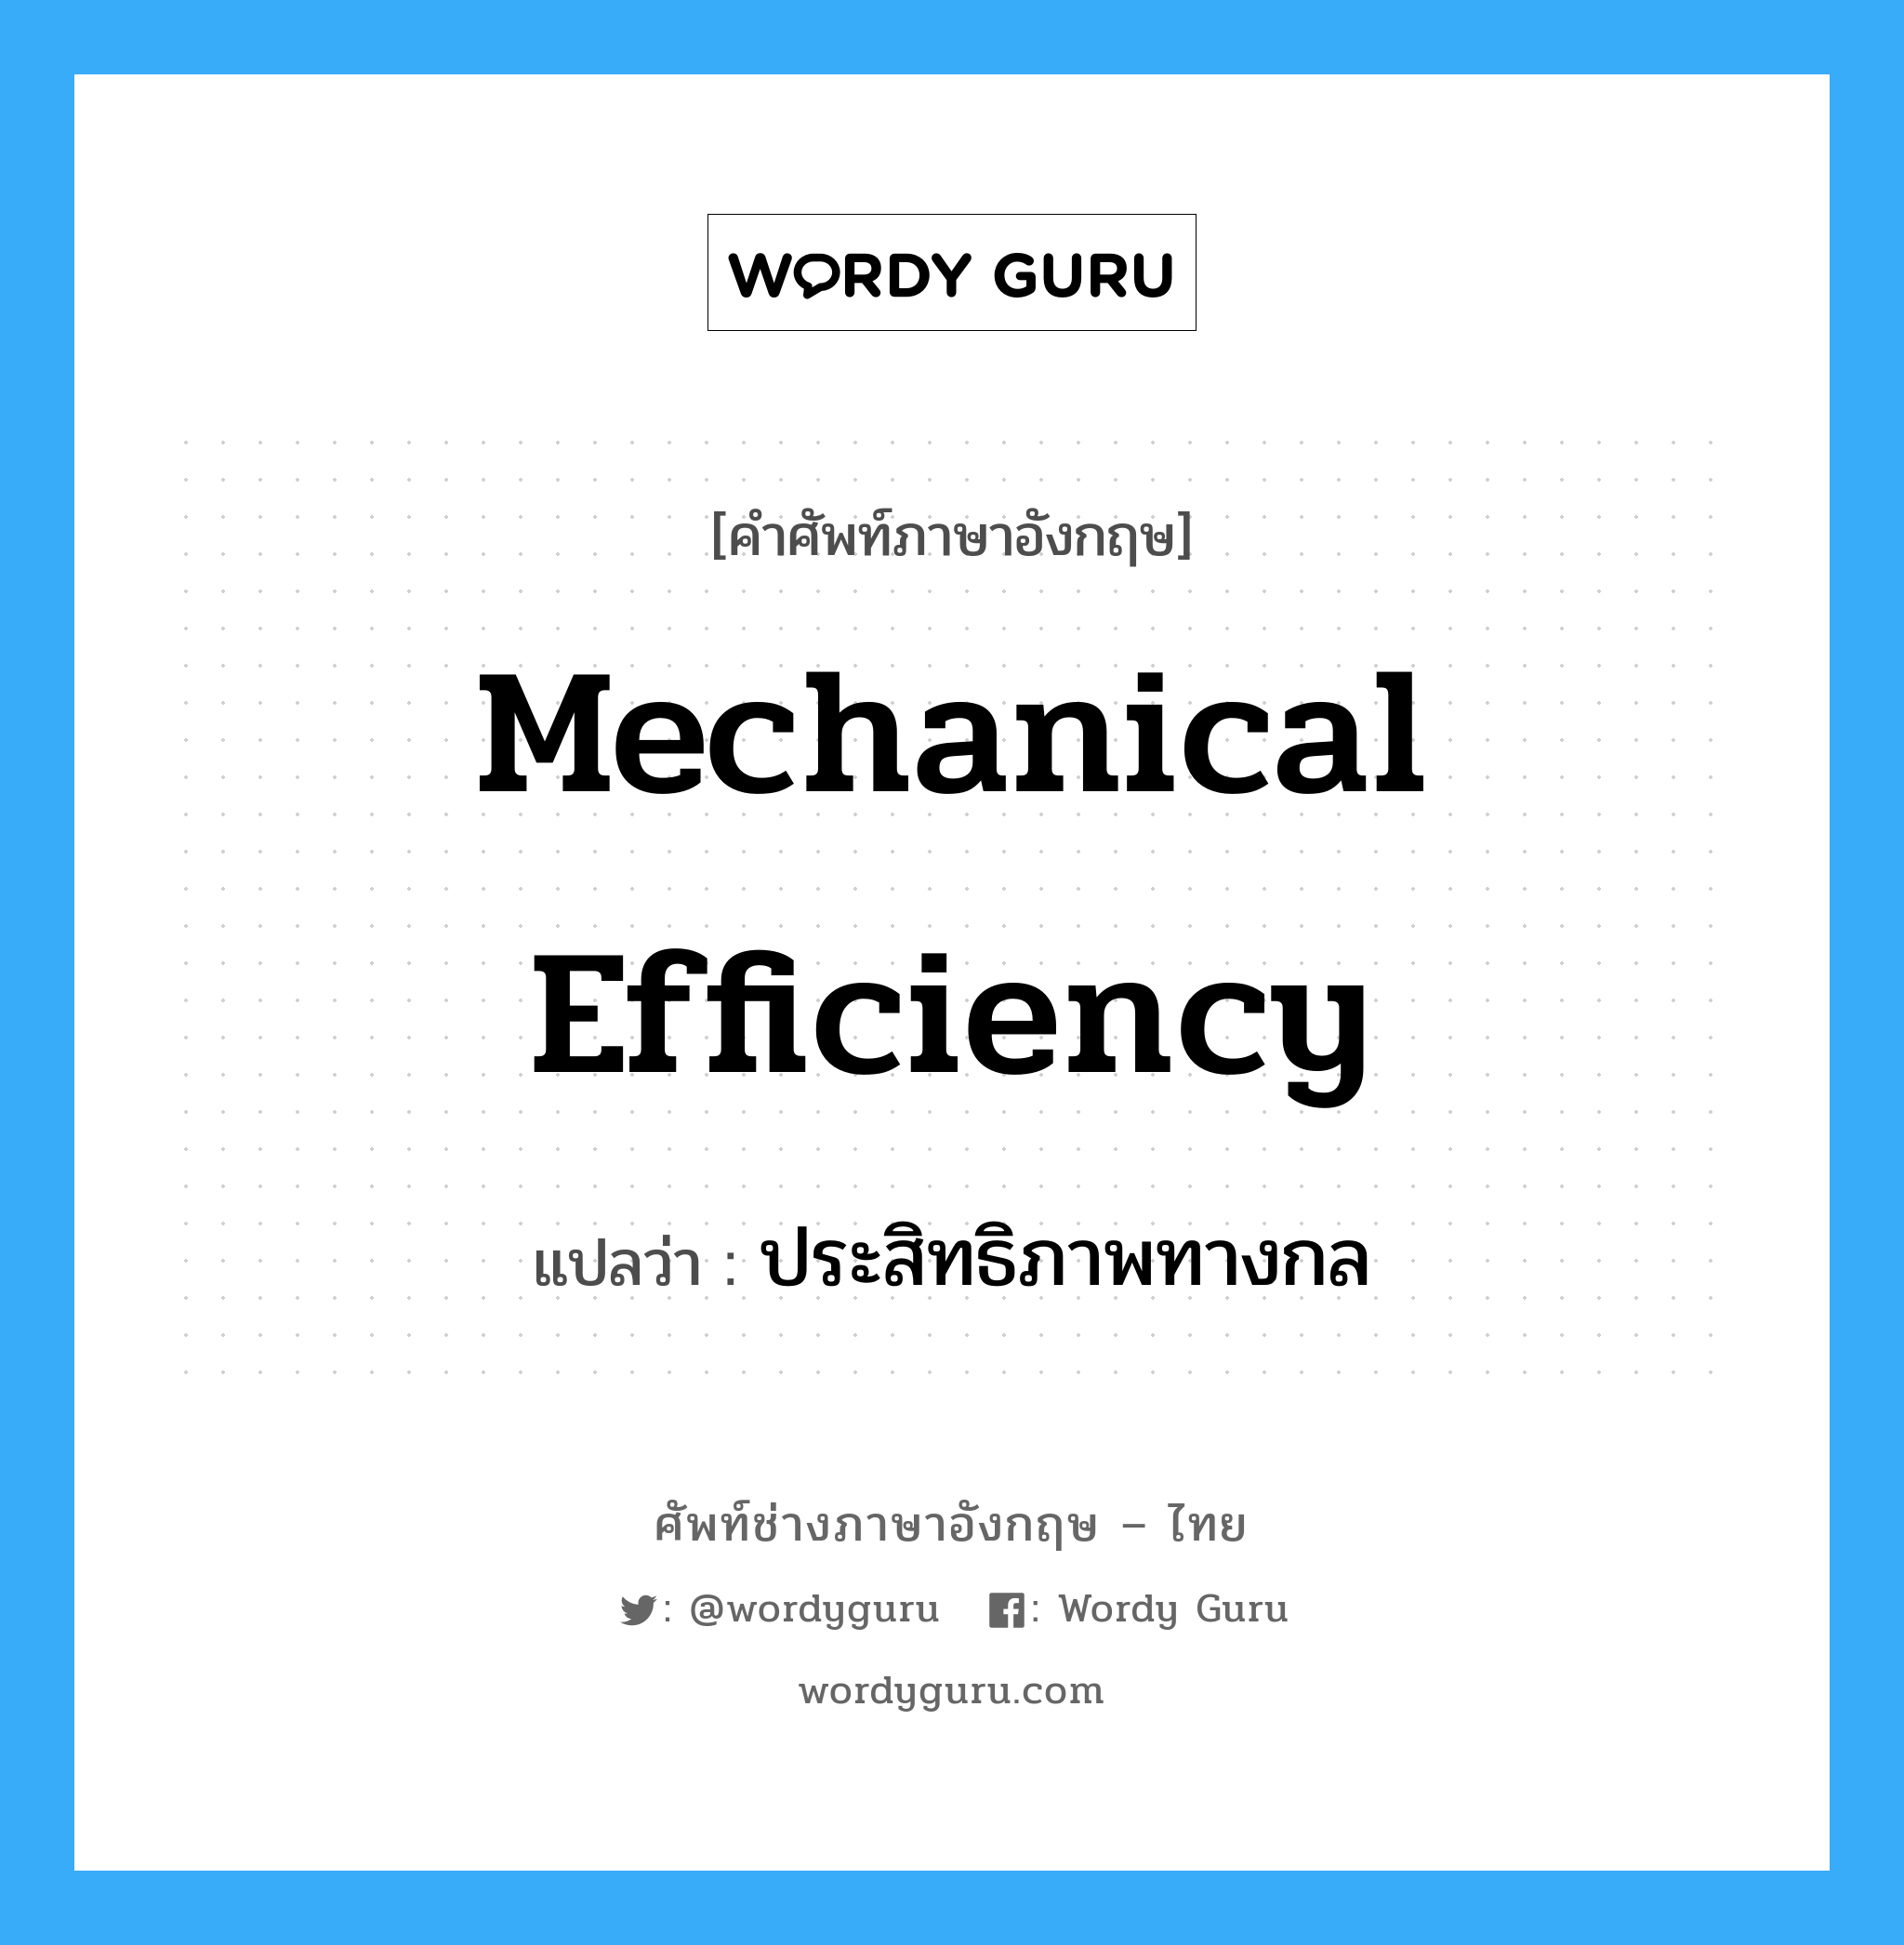 mechanical efficiency แปลว่า?, คำศัพท์ช่างภาษาอังกฤษ - ไทย mechanical efficiency คำศัพท์ภาษาอังกฤษ mechanical efficiency แปลว่า ประสิทธิภาพทางกล